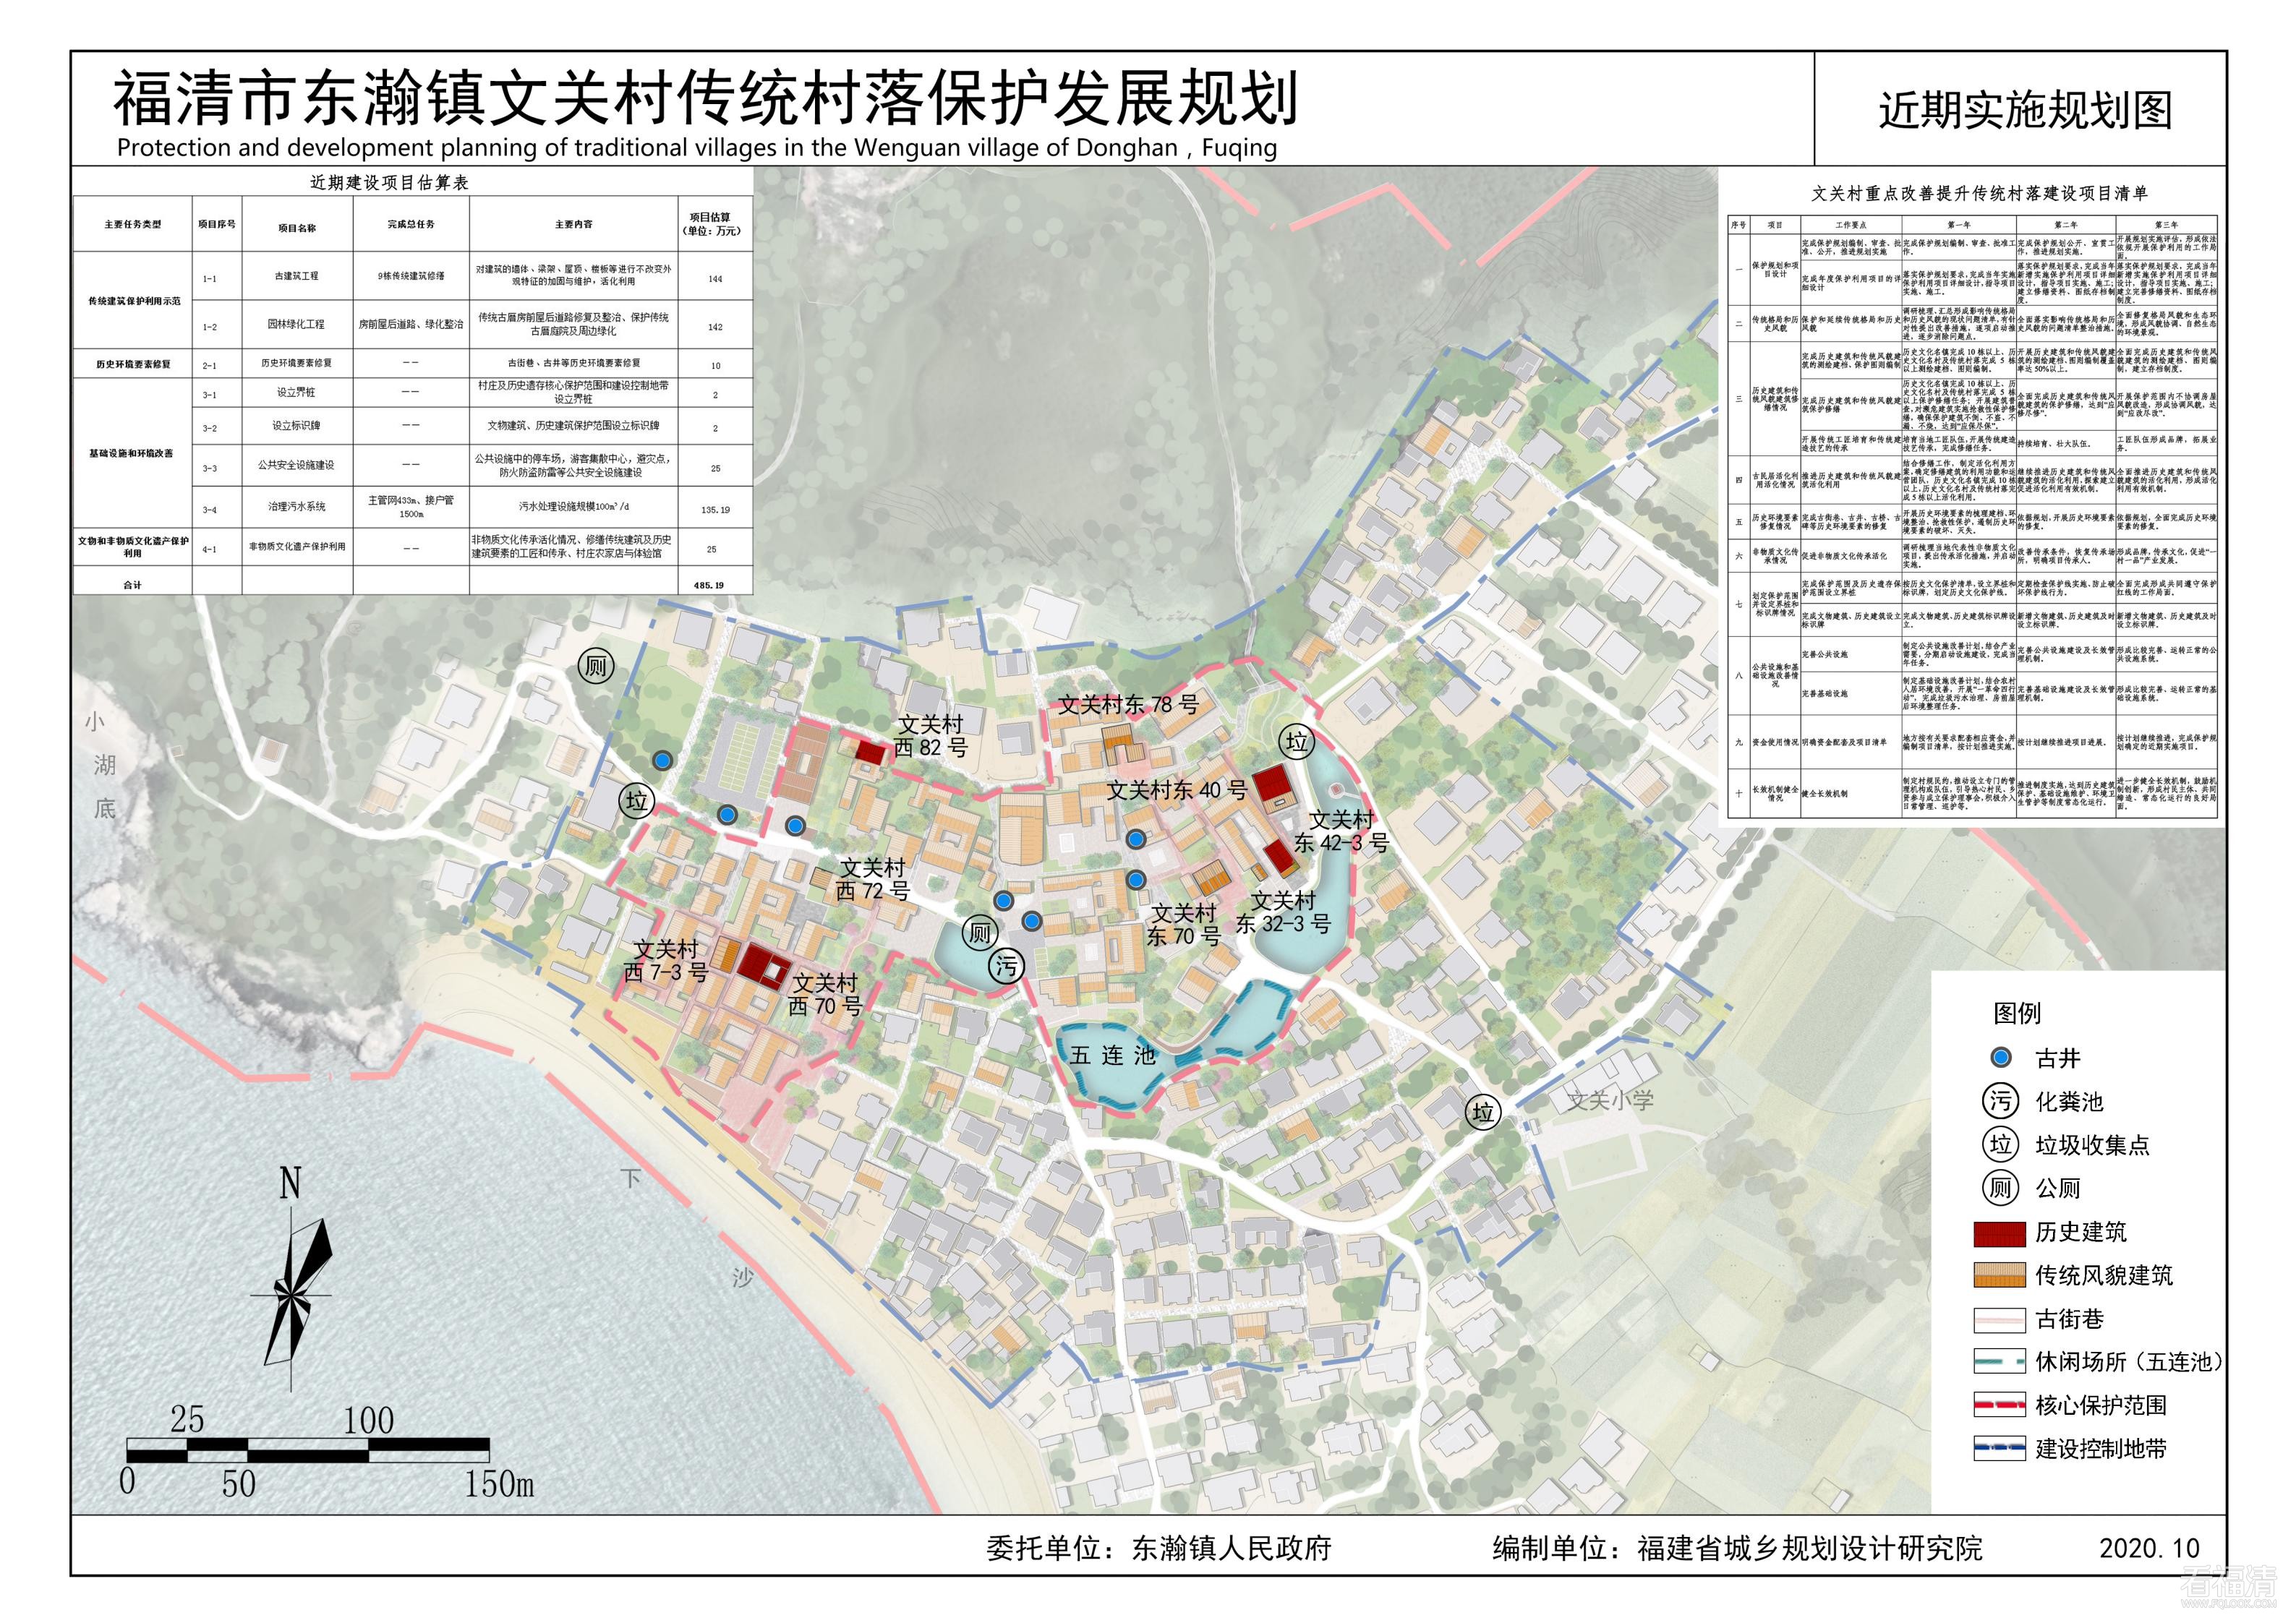 《福清市东瀚镇文关村传统村落保护发展规划（2020-2035年）》_03.jpg